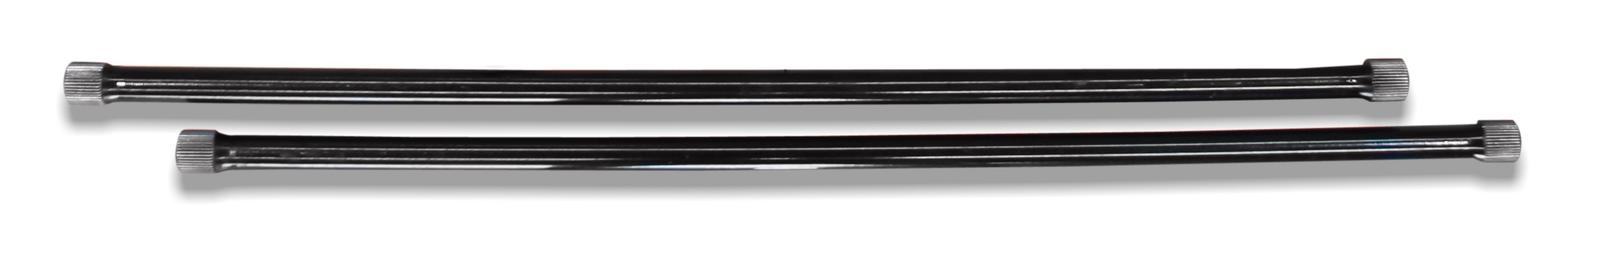 Upgraded Torsion Bar Kit to suit Nissan Navara D22 OD: 27mm, Length: 892mm